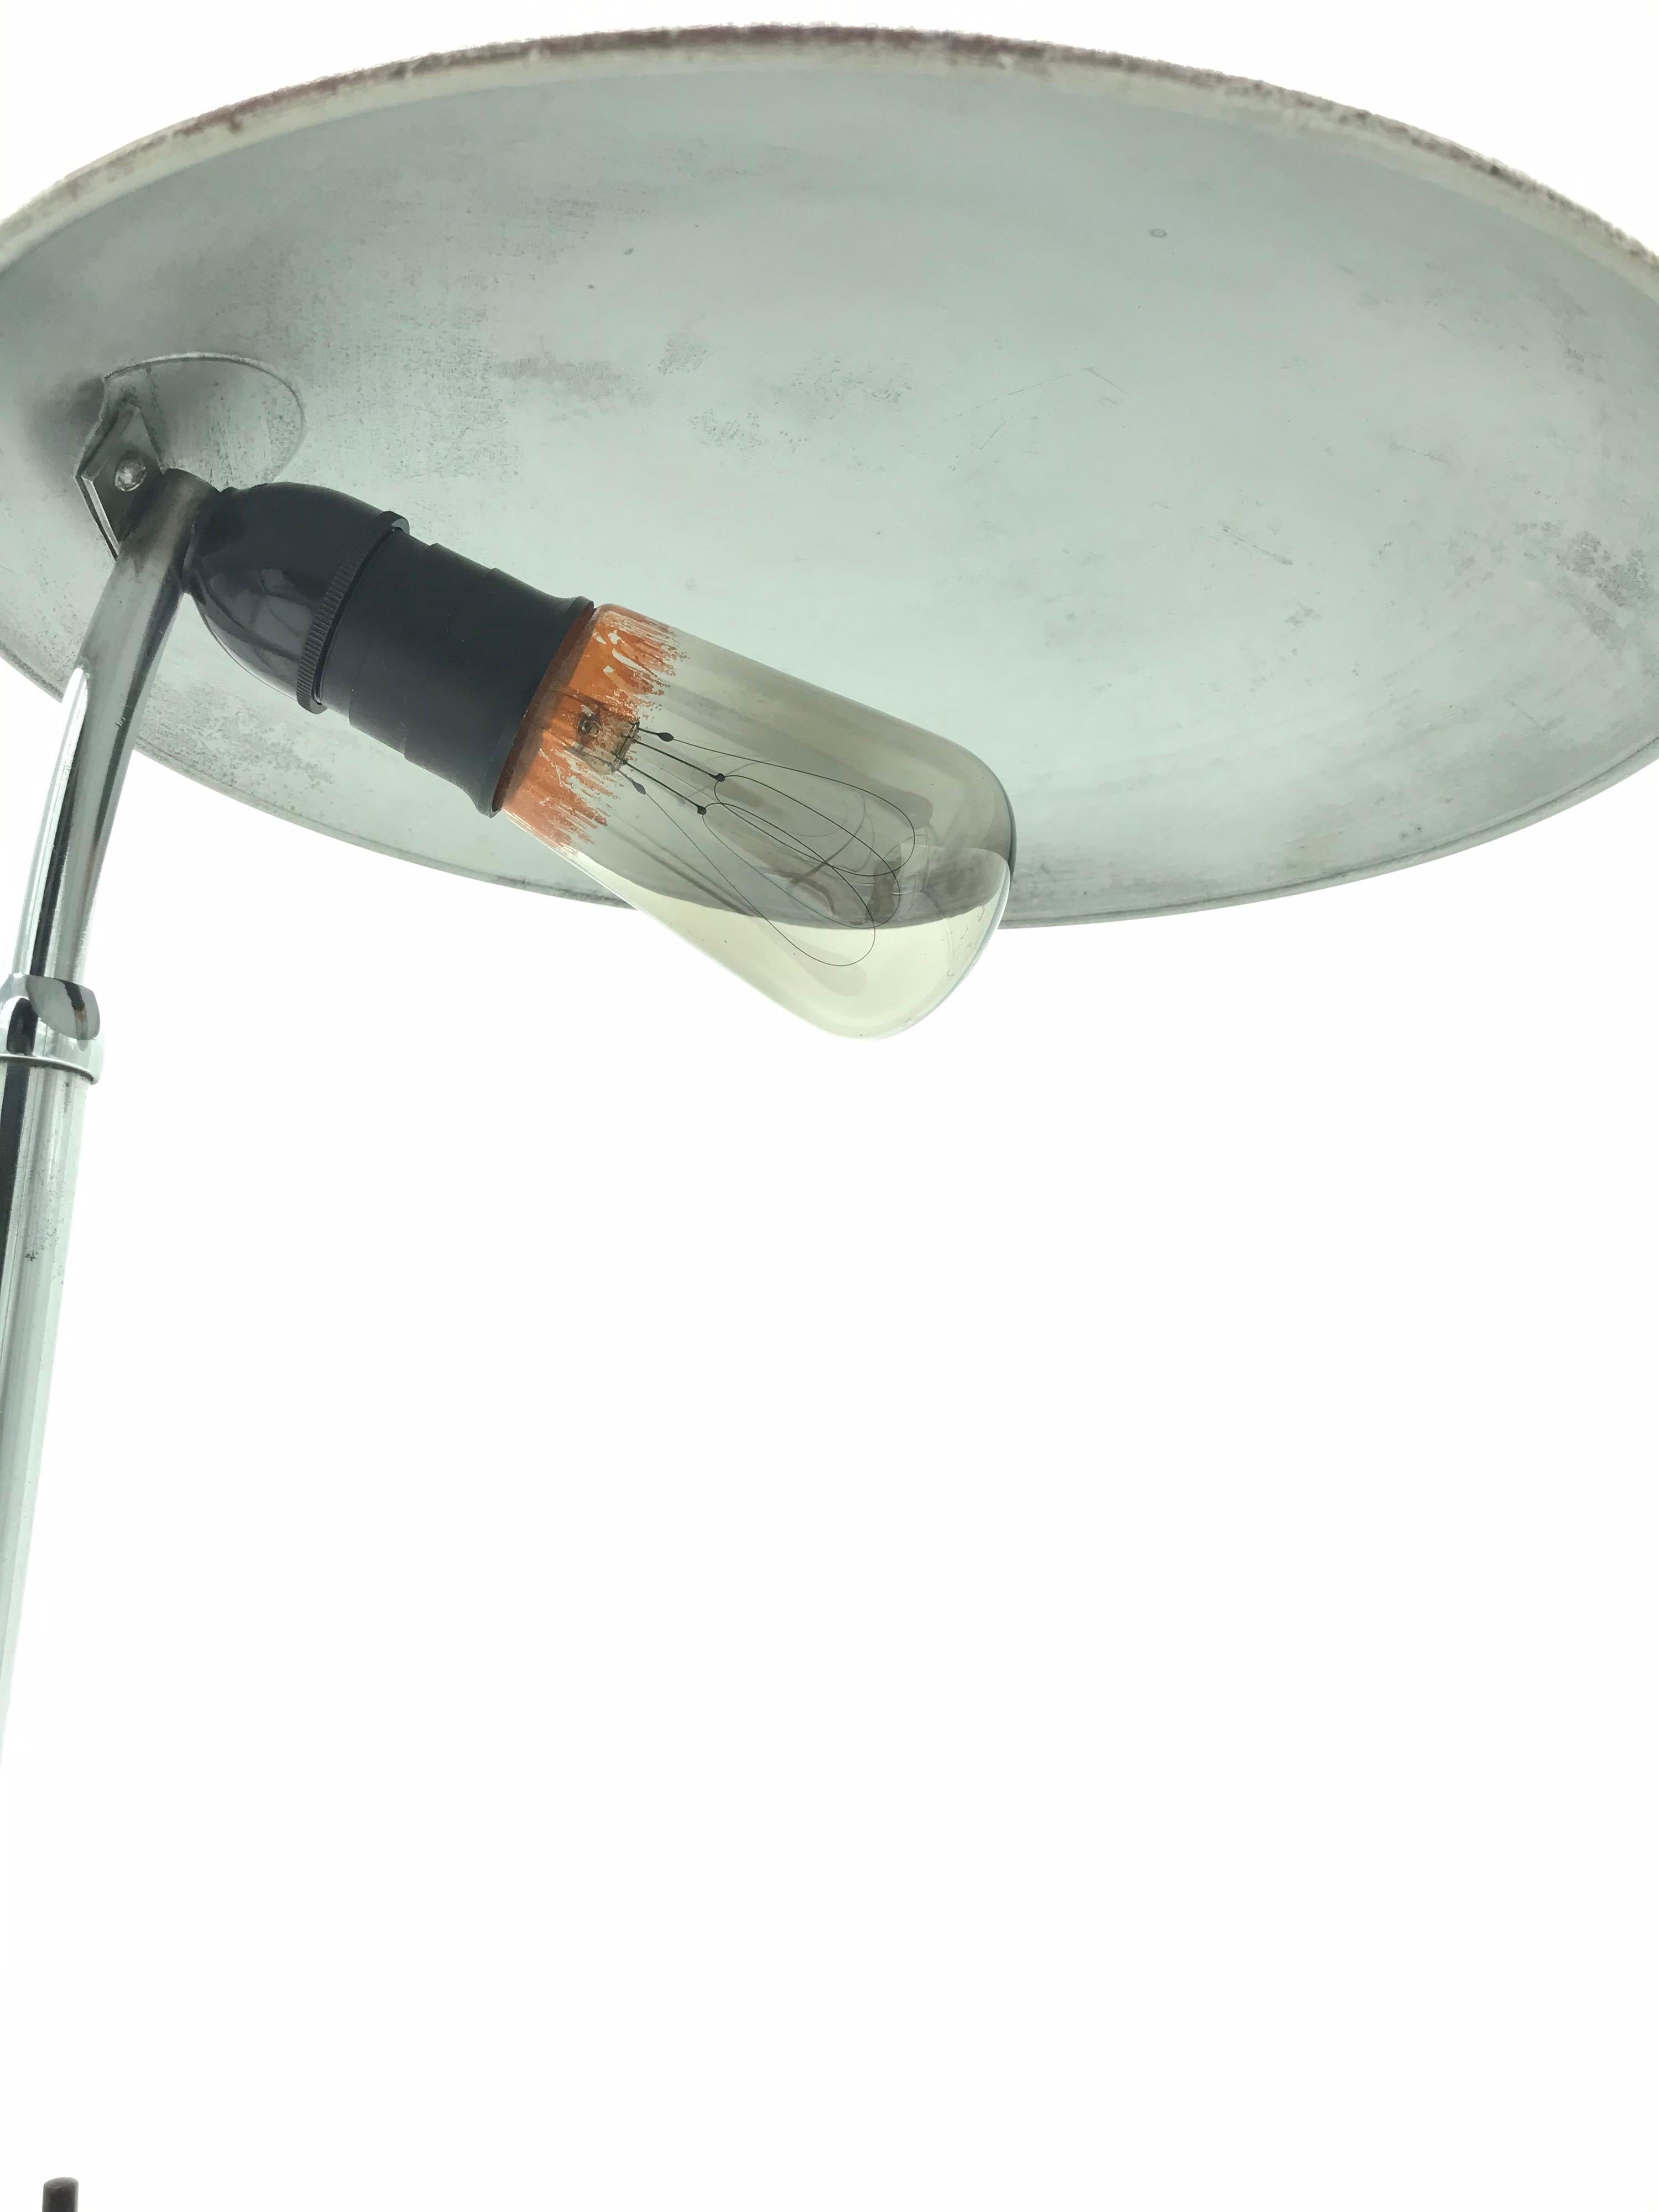 Lampe de table vintage Bauhaus.
Datant des années 1930, les surfaces sont joliment usées et patinées.
Recâblé et inclus dans la vente est une ampoule antique à filament de carbone qui donne une belle lumière chaude. 

   
 